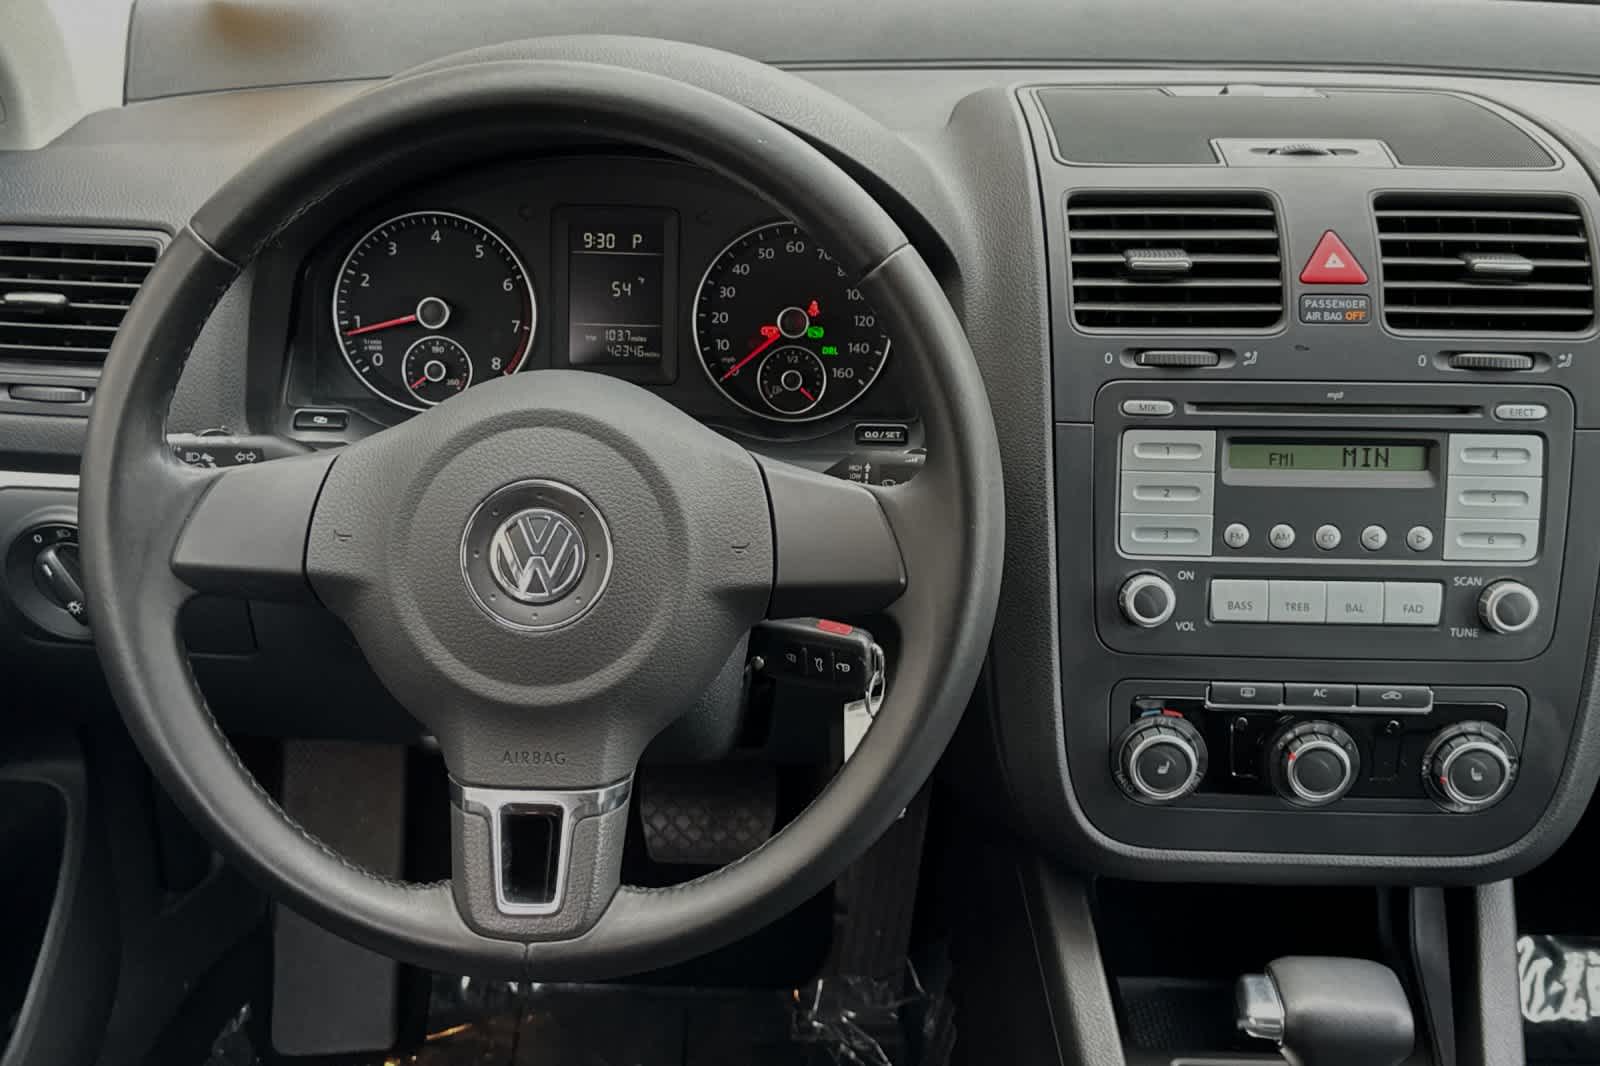 2010 Volkswagen Jetta Limited Edition 15